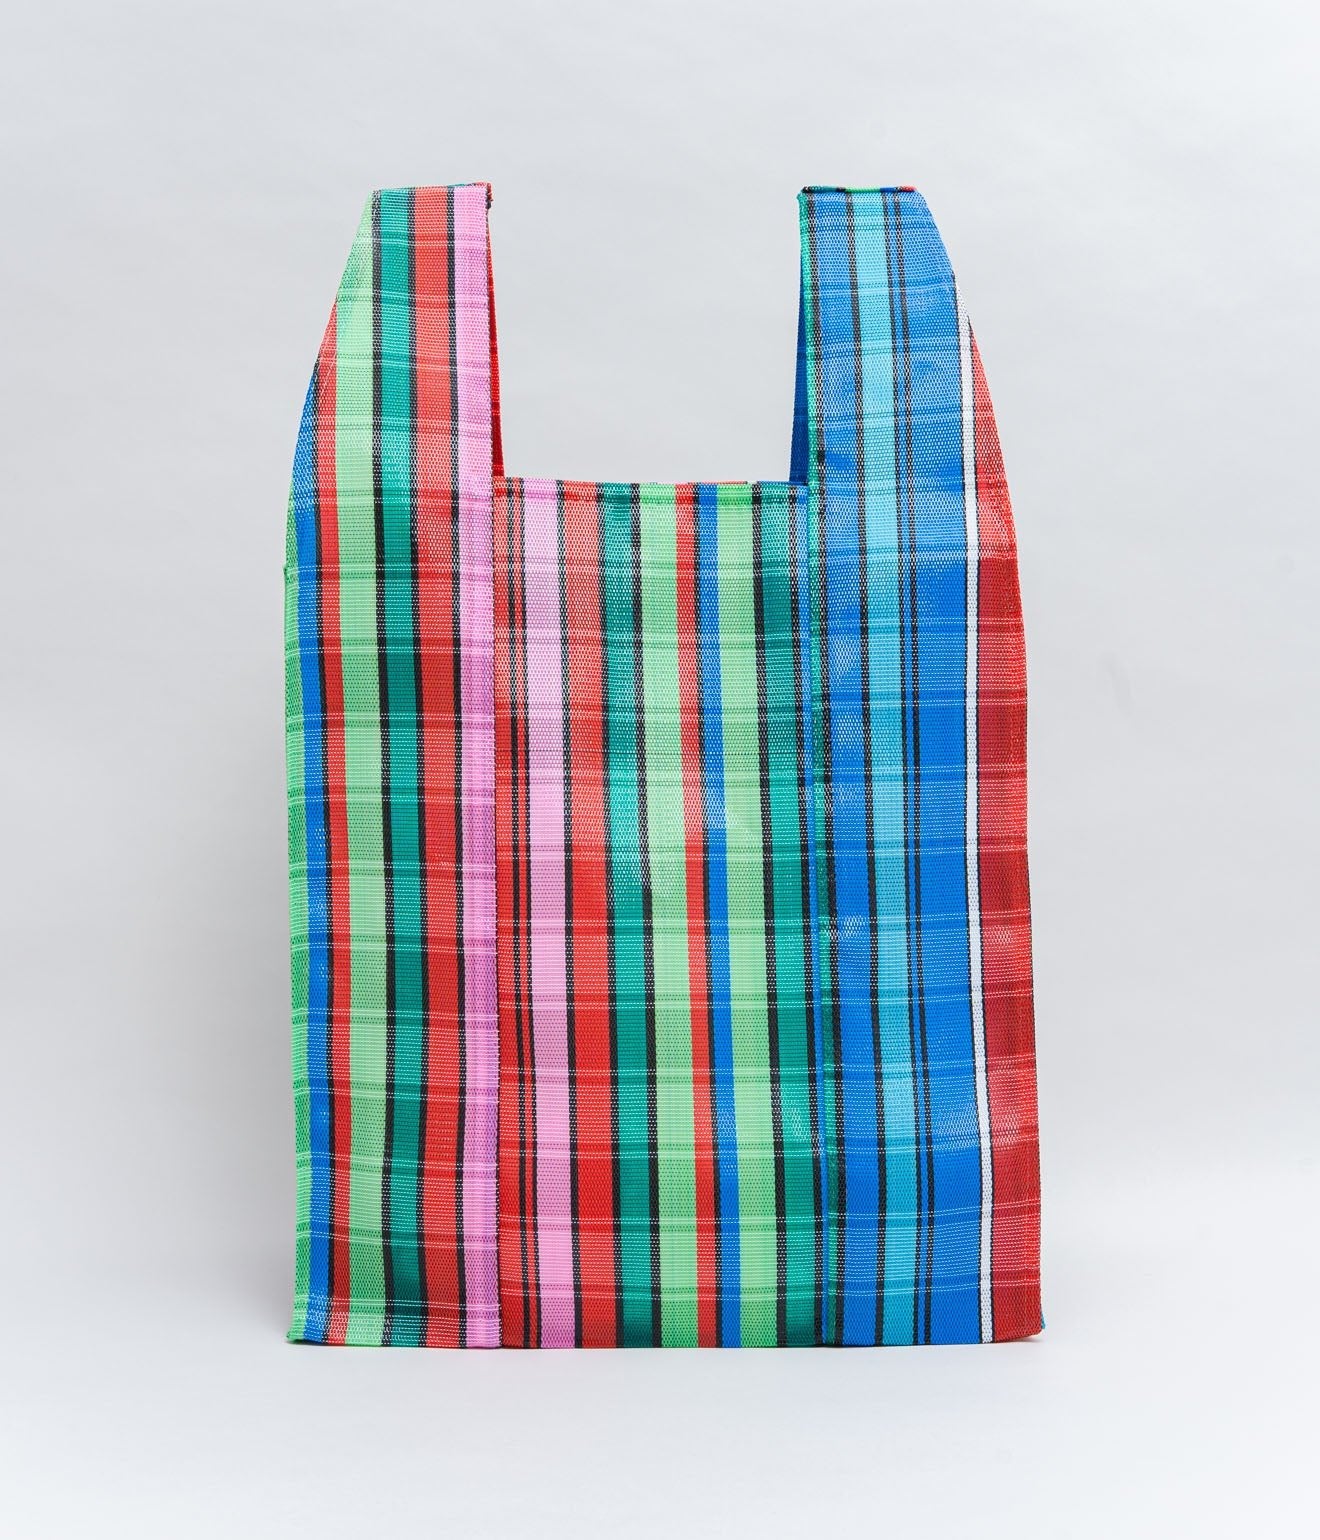 BONCHEY ”Shopping bag Medium" Yddik - WEAREALLANIMALS